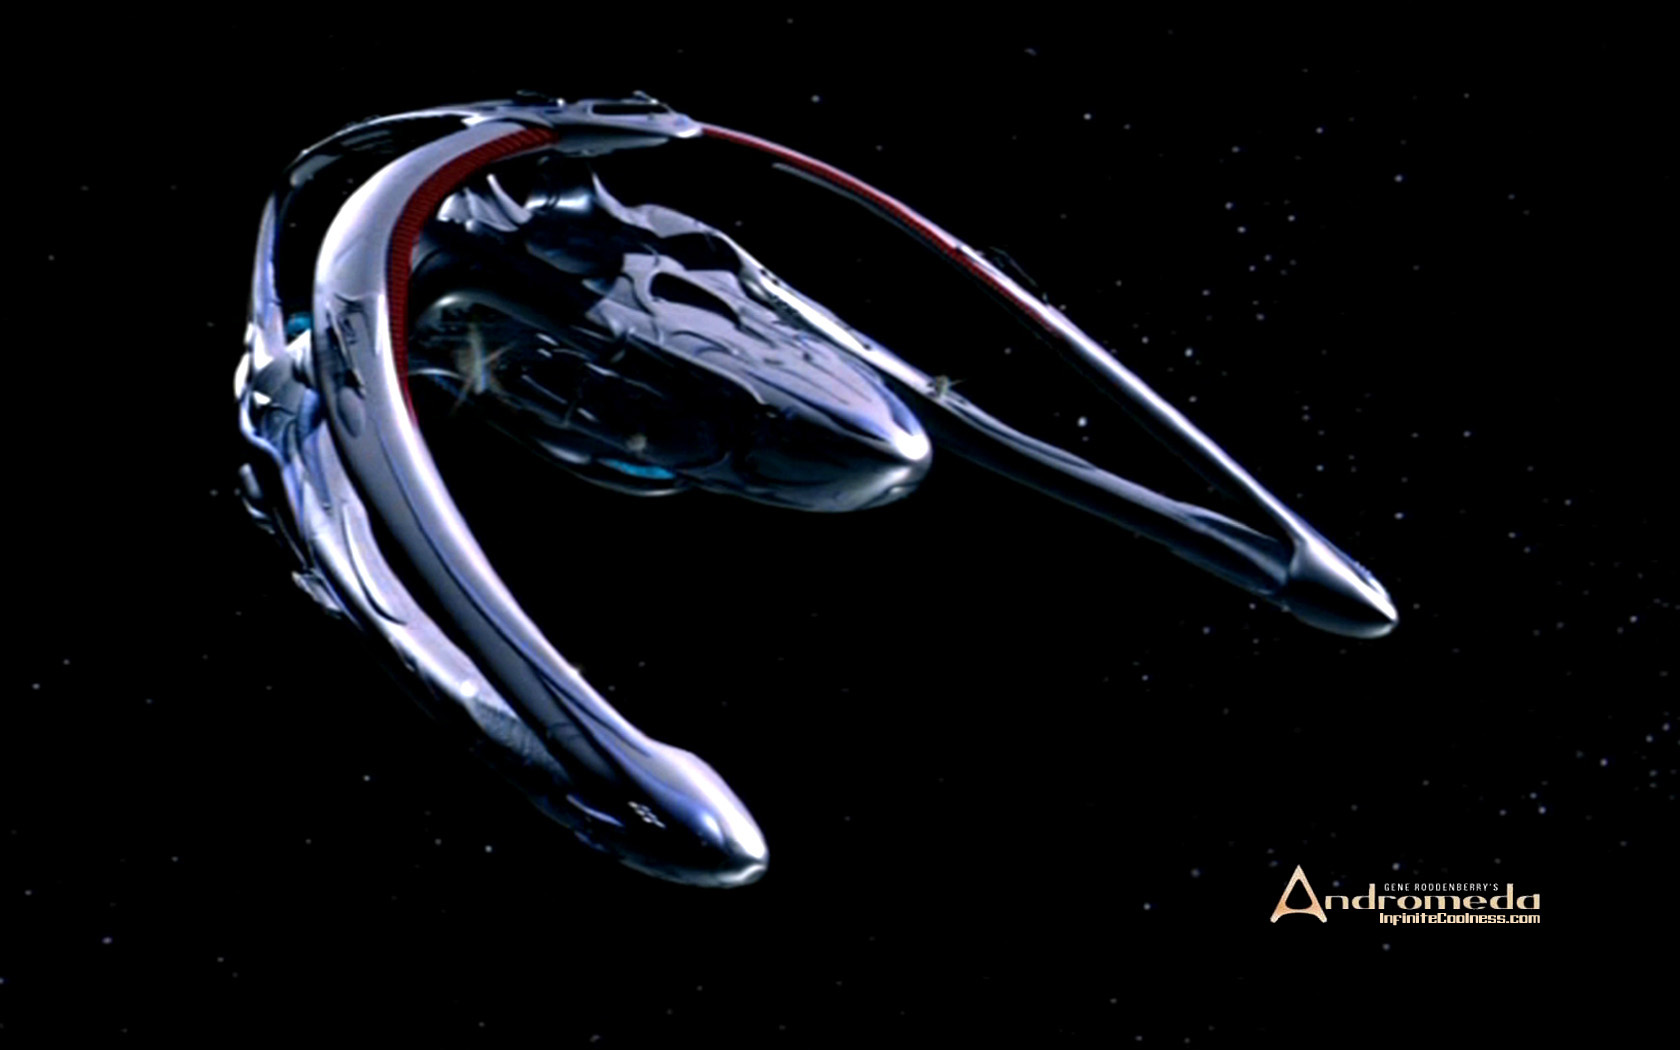 Los mejores fondos de pantalla de Andromeda para la pantalla del teléfono